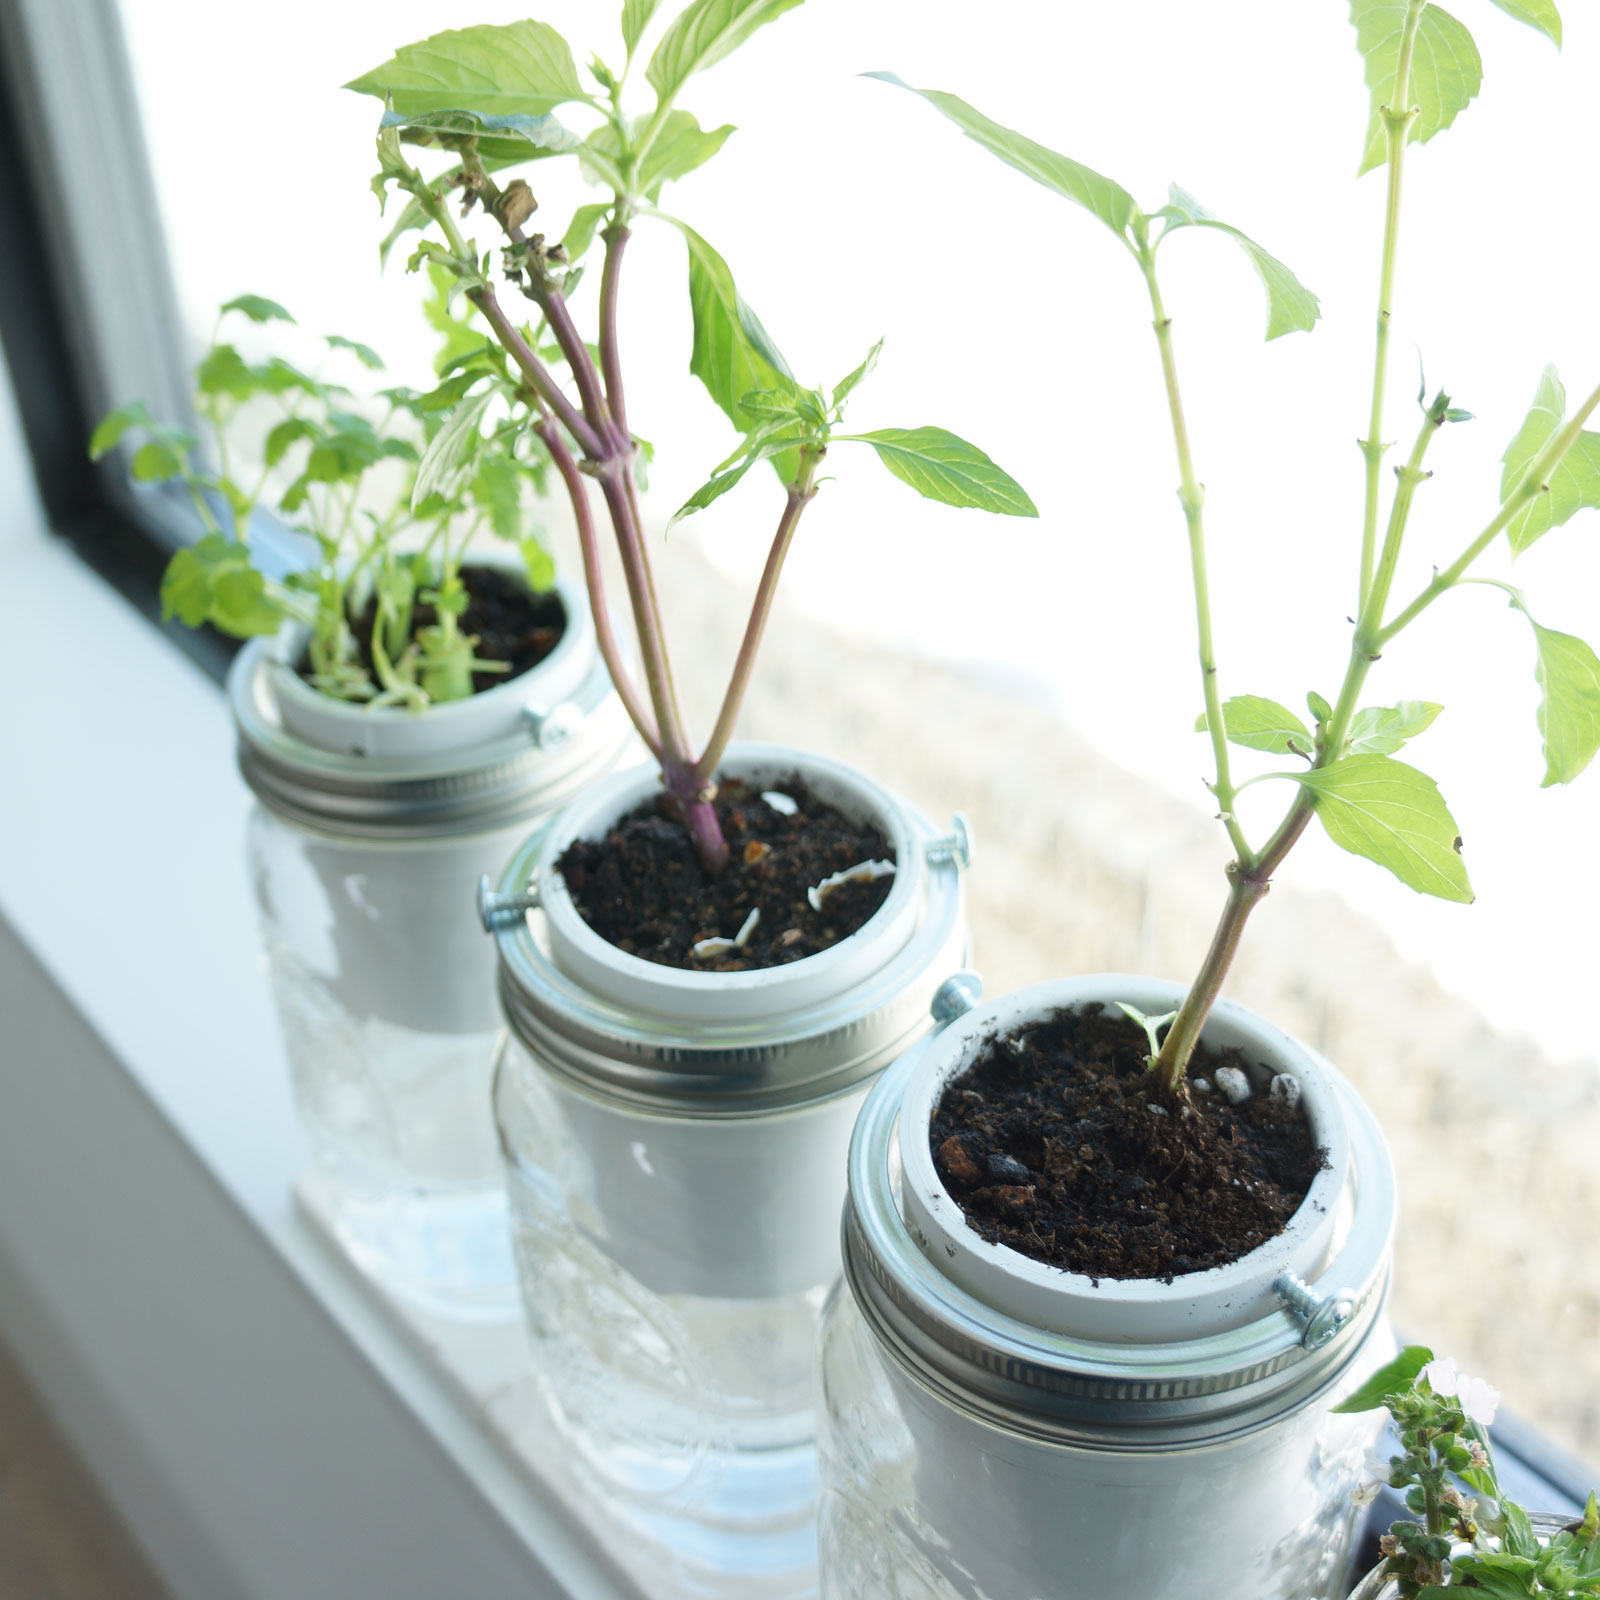 14. DIY Self-Watering Herb Planter